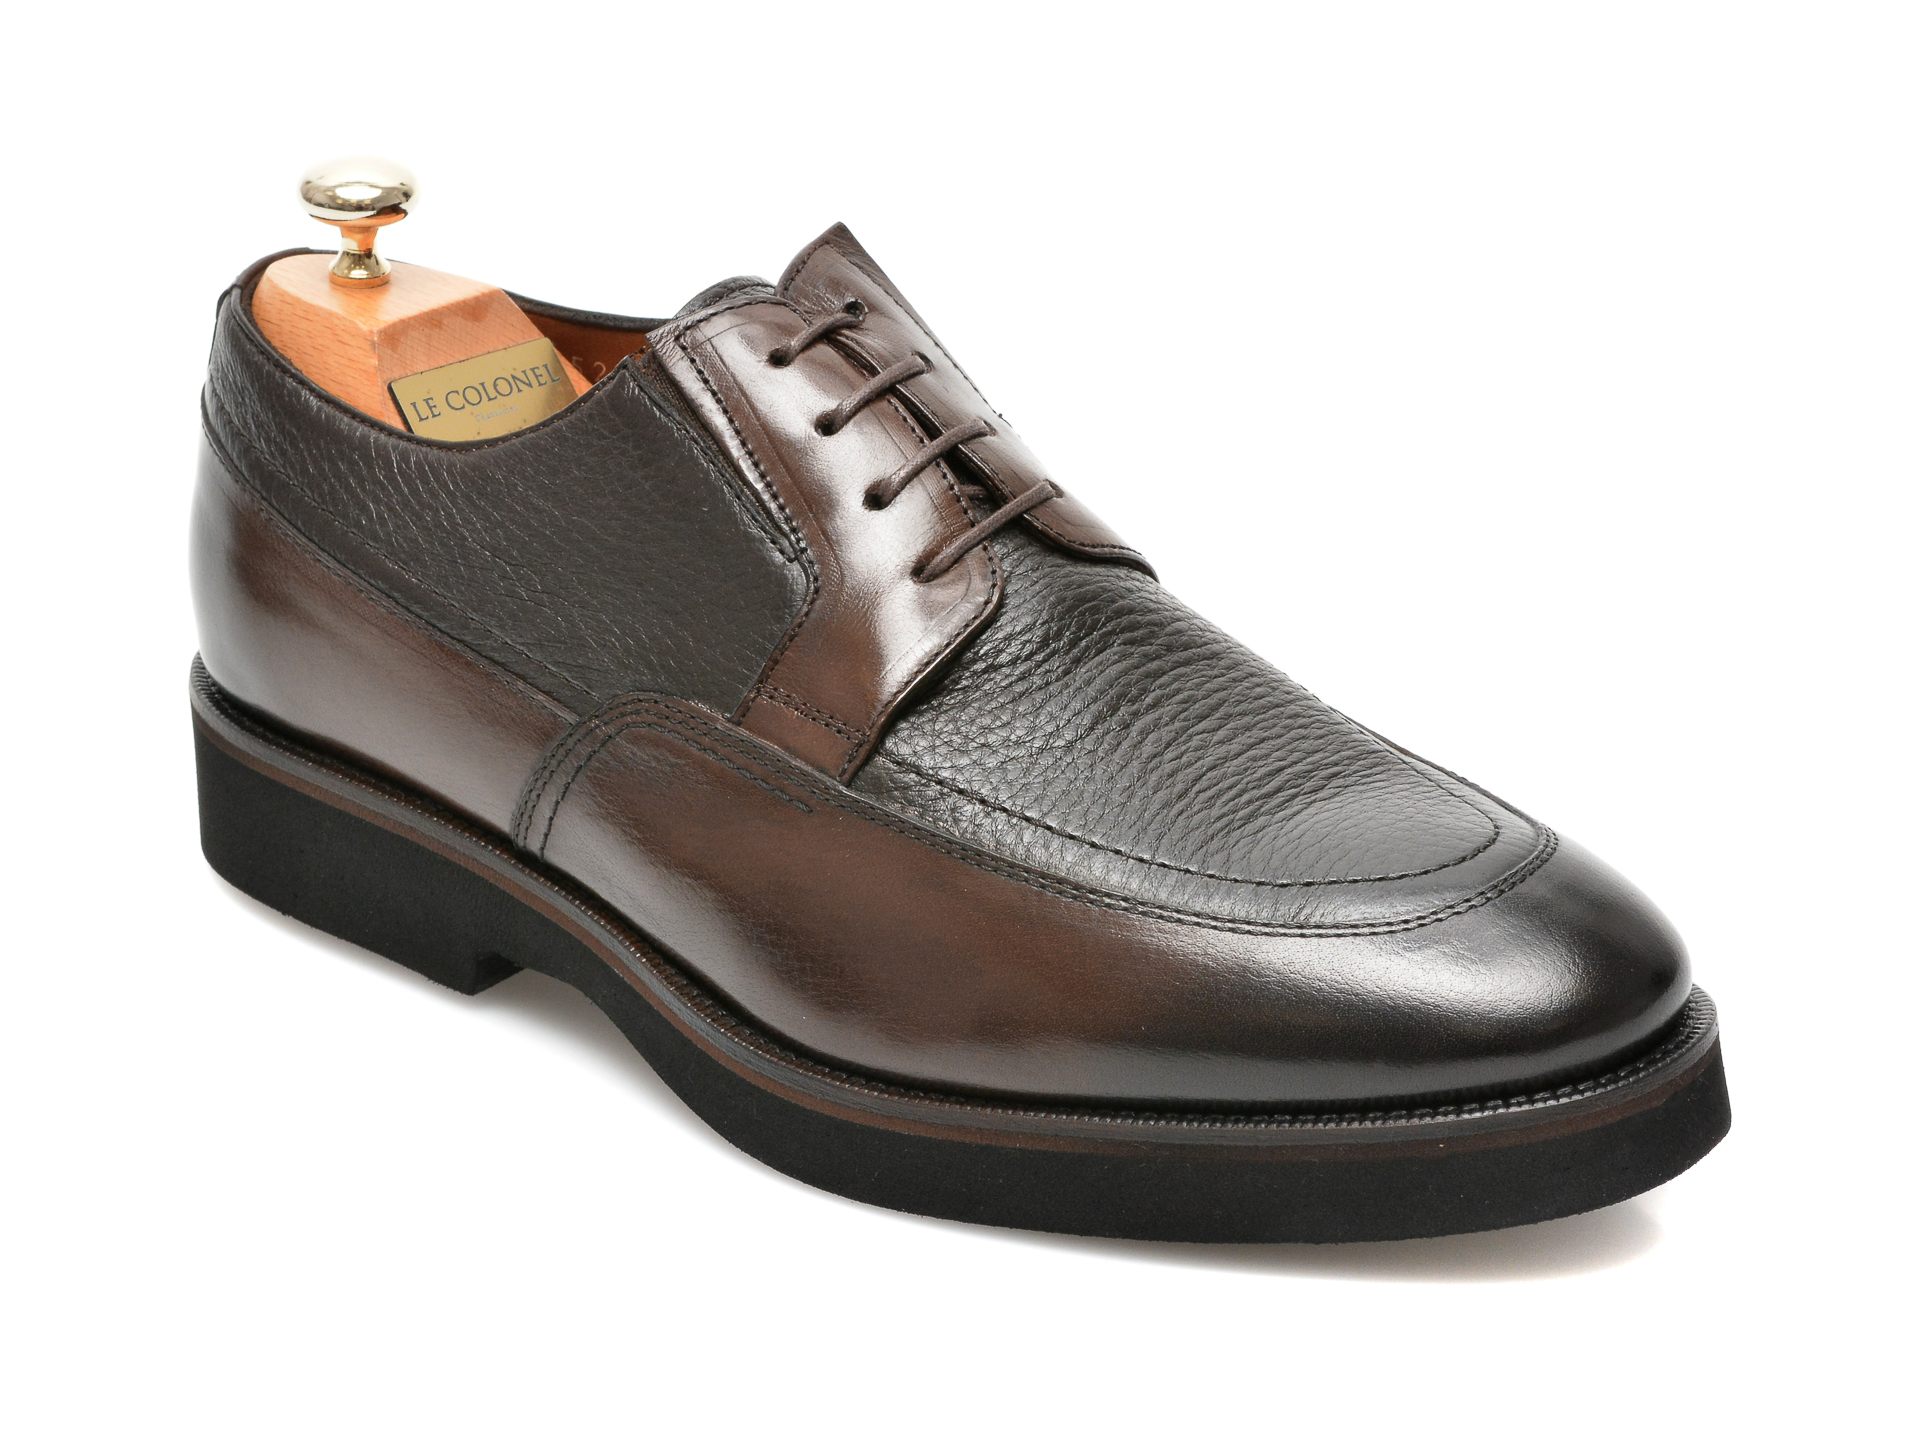 Pantofi LE COLONEL maro, 43452, din piele naturala Le Colonel imagine 2022 reducere